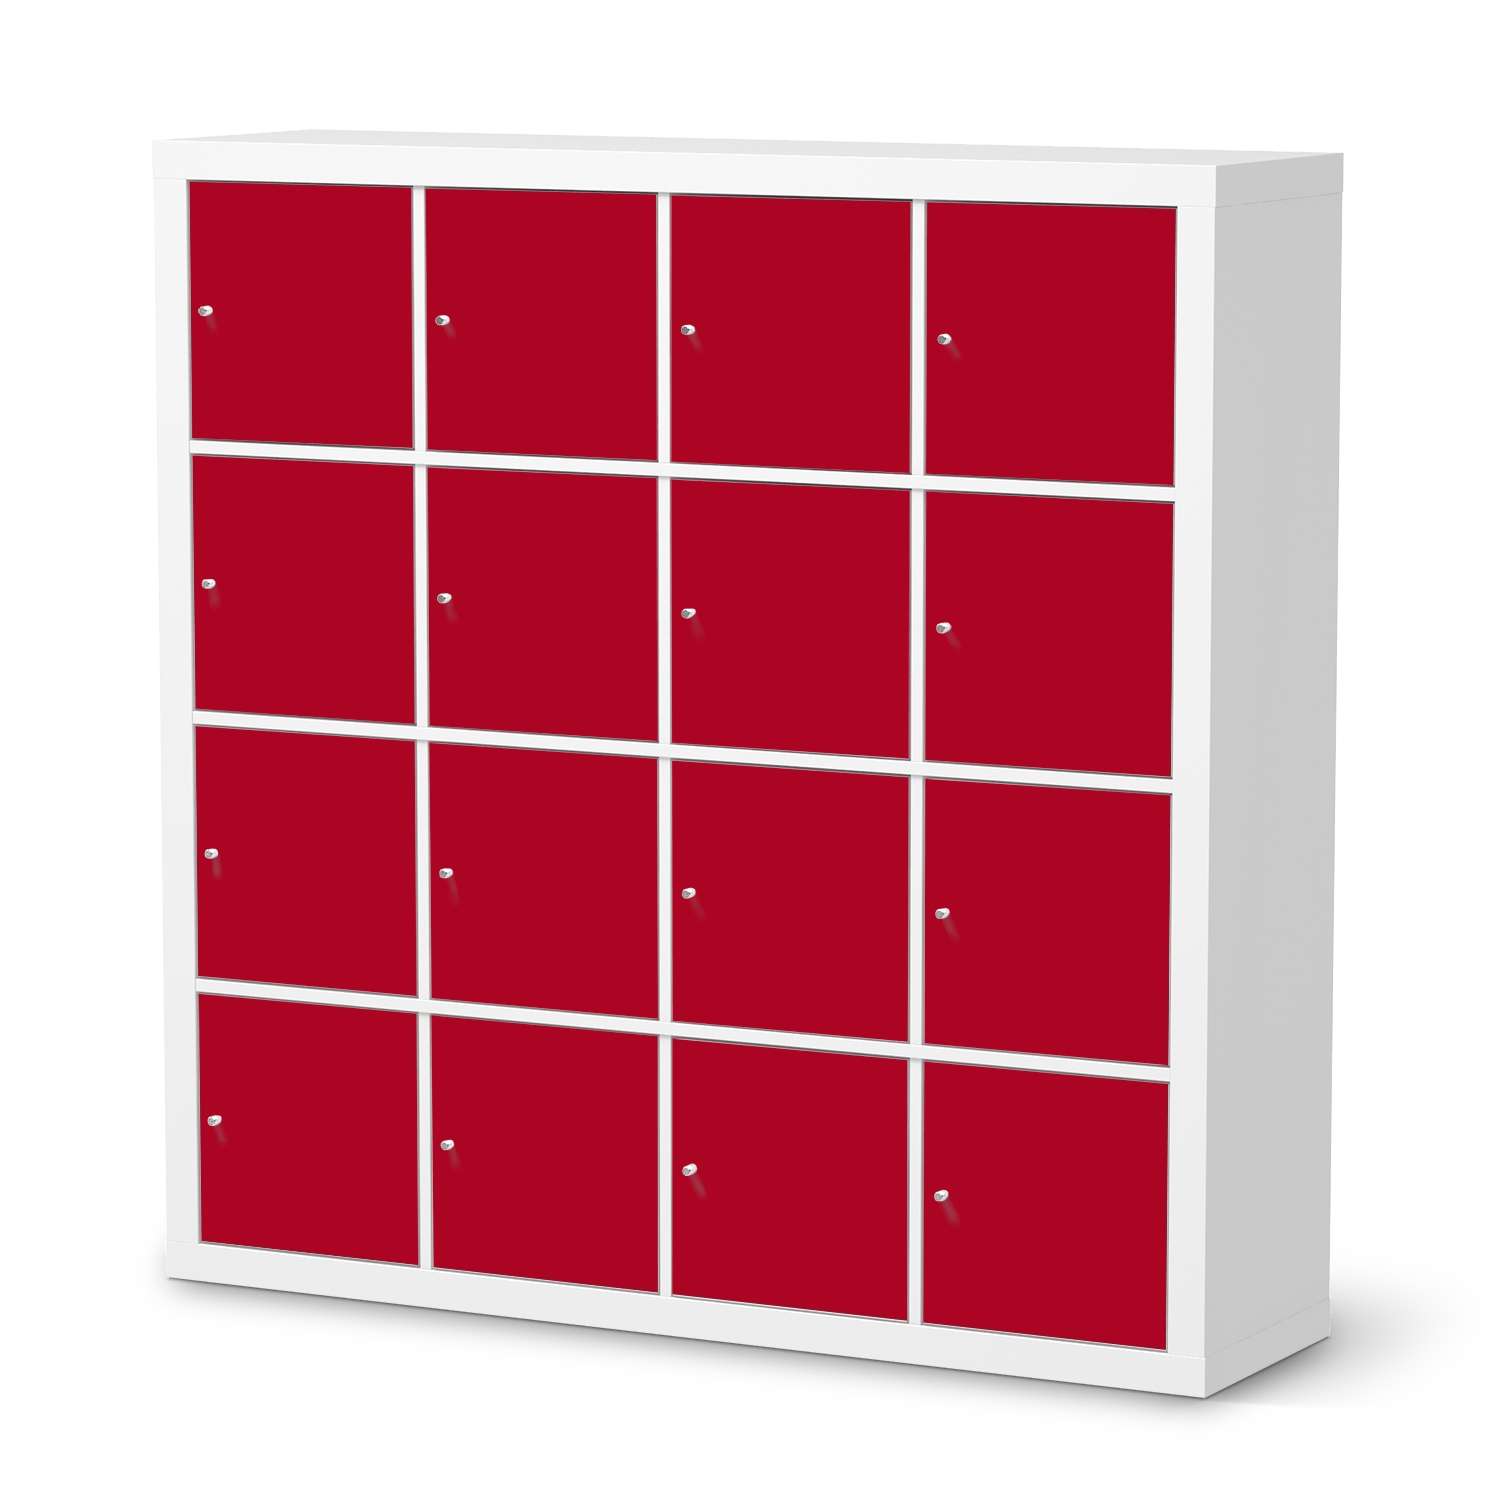 M?belfolie IKEA Kallax Regal 16 T?ren - Design: Rot Dark von creatisto